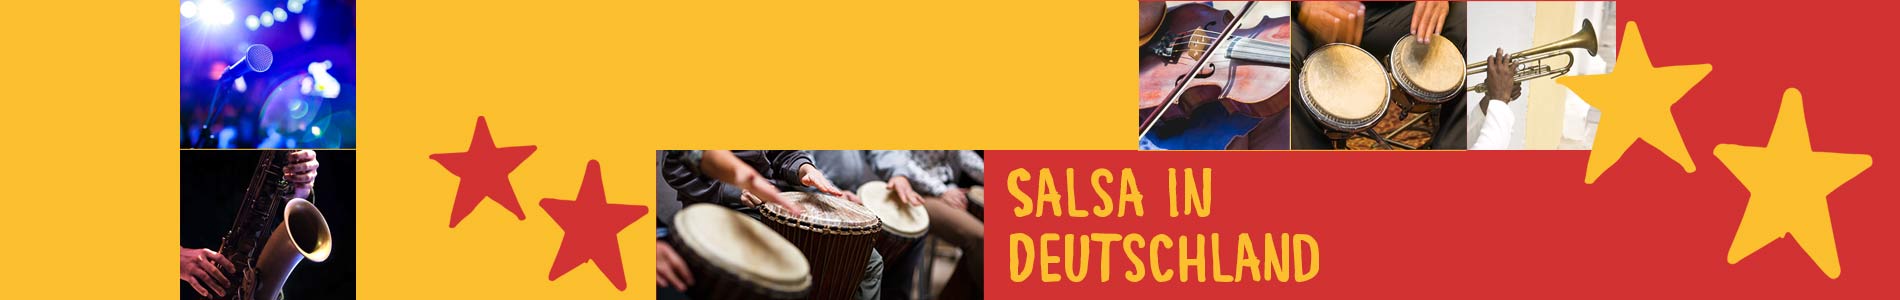 Salsa in Büchenbeuren – Salsa lernen und tanzen, Tanzkurse, Partys, Veranstaltungen